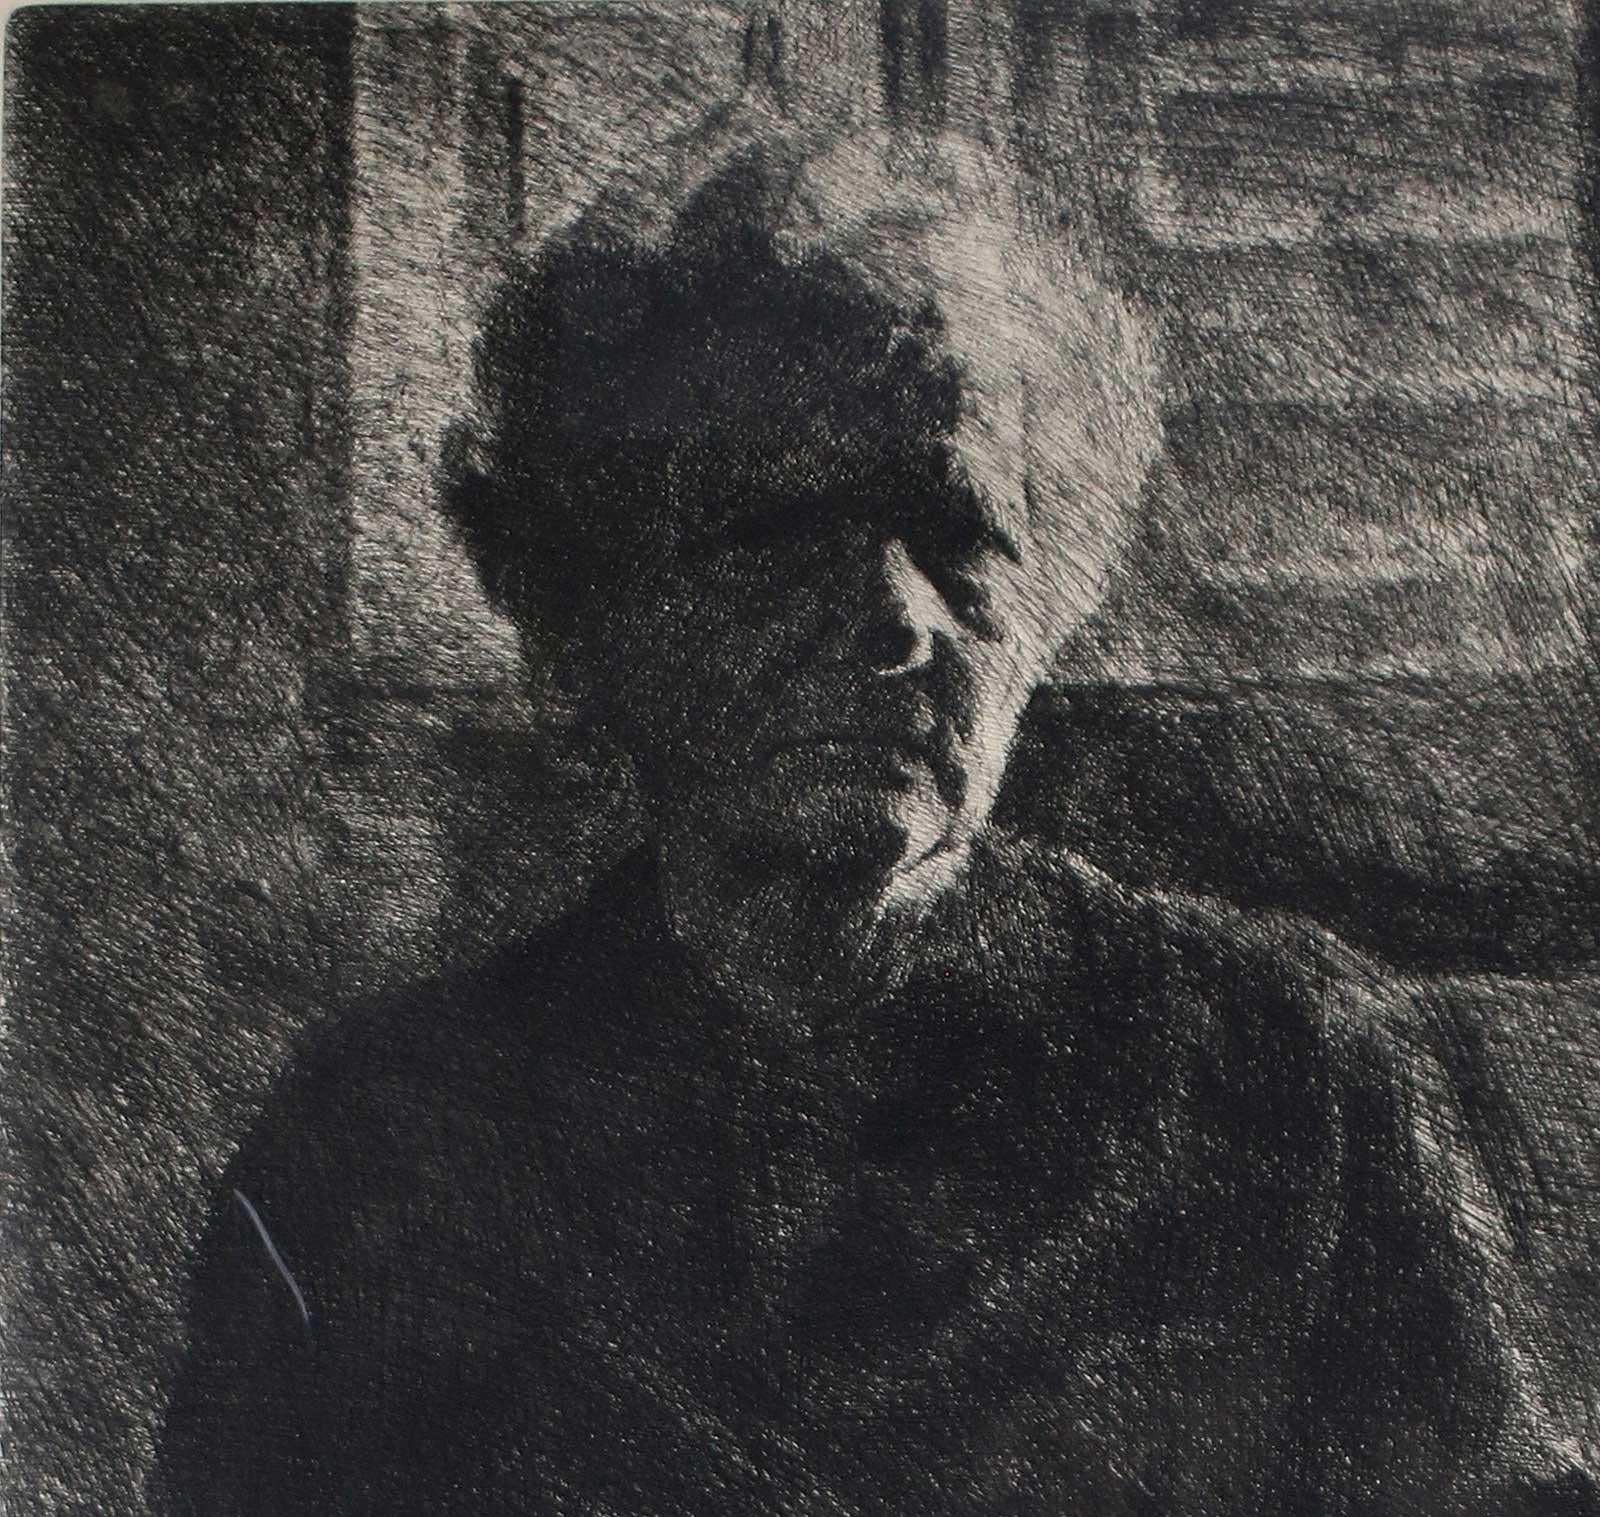 Ma grand-mère (la mère de l'artiste, la quintessence de la matrice italienne) - Print de Paolo Ciampini